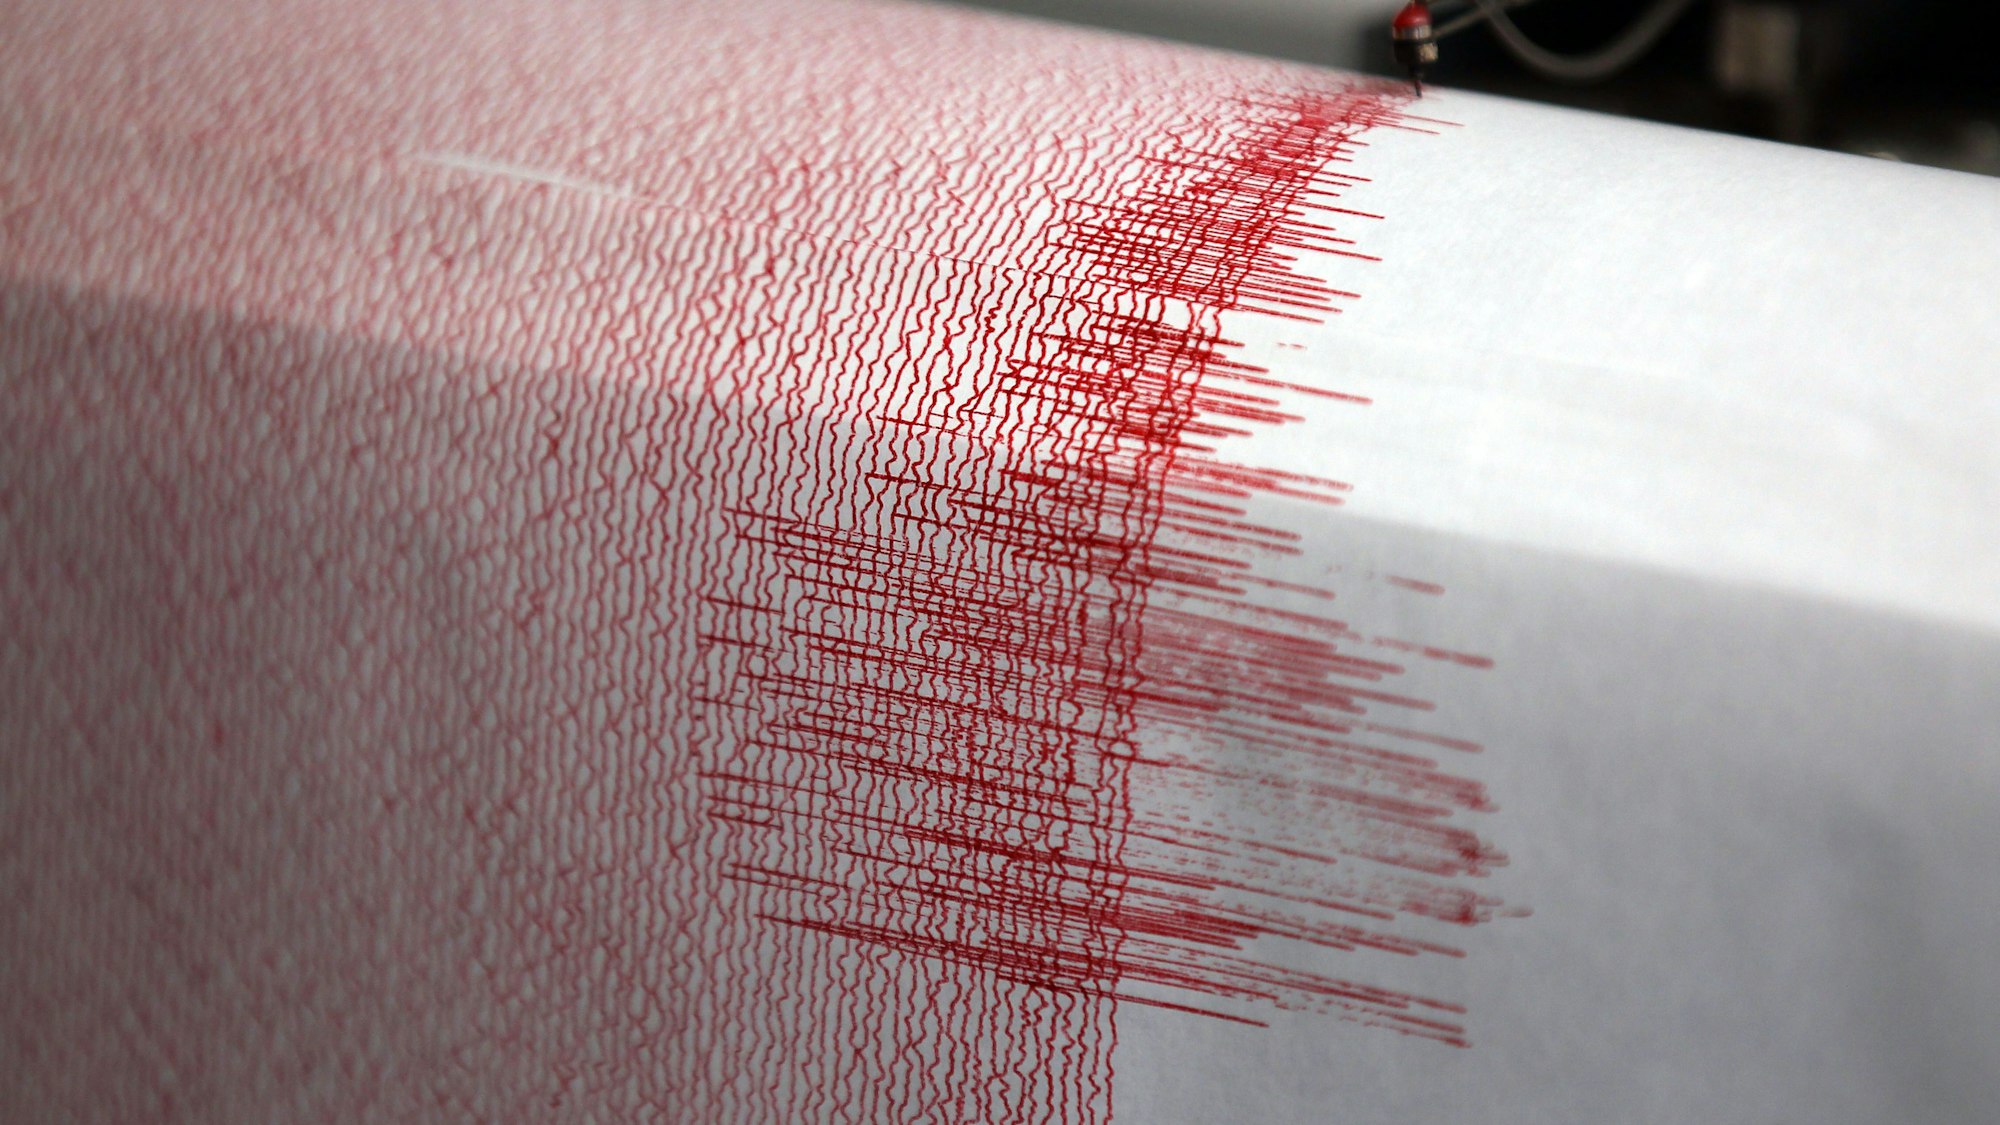 Der Seismograph einer Erdbebenwarte verzeichnet Ausschläge.Zu sehen sind sie in Form einer roten Linie auf einem Blatt Papier.